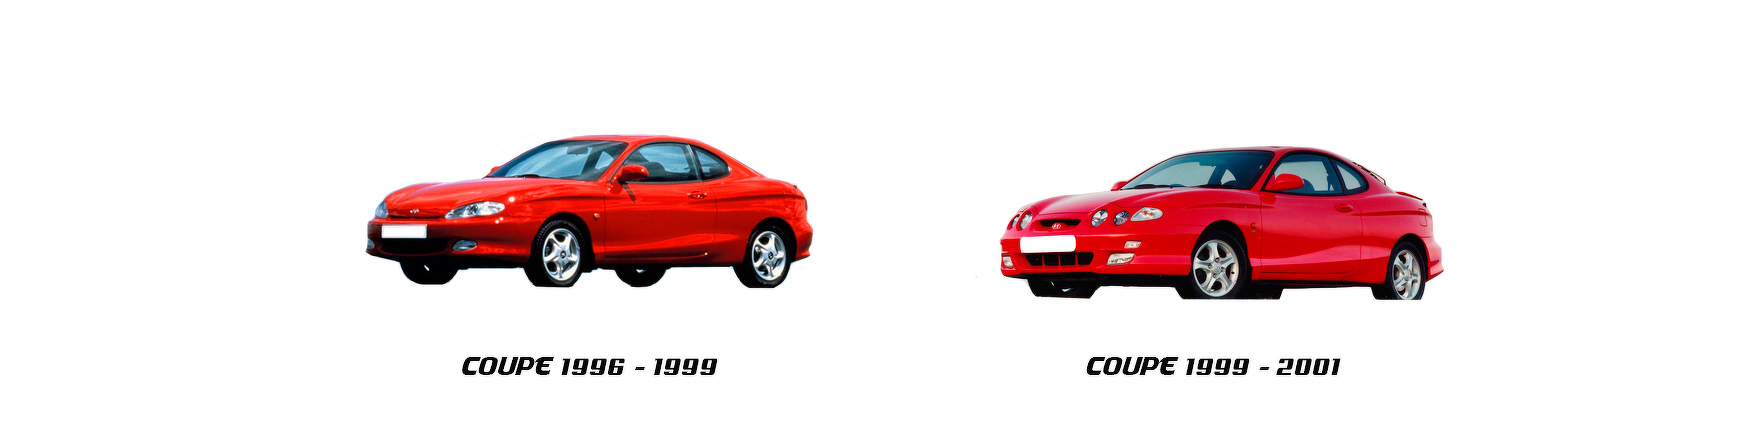 hyundai coupe 1996 1997 1998 1999